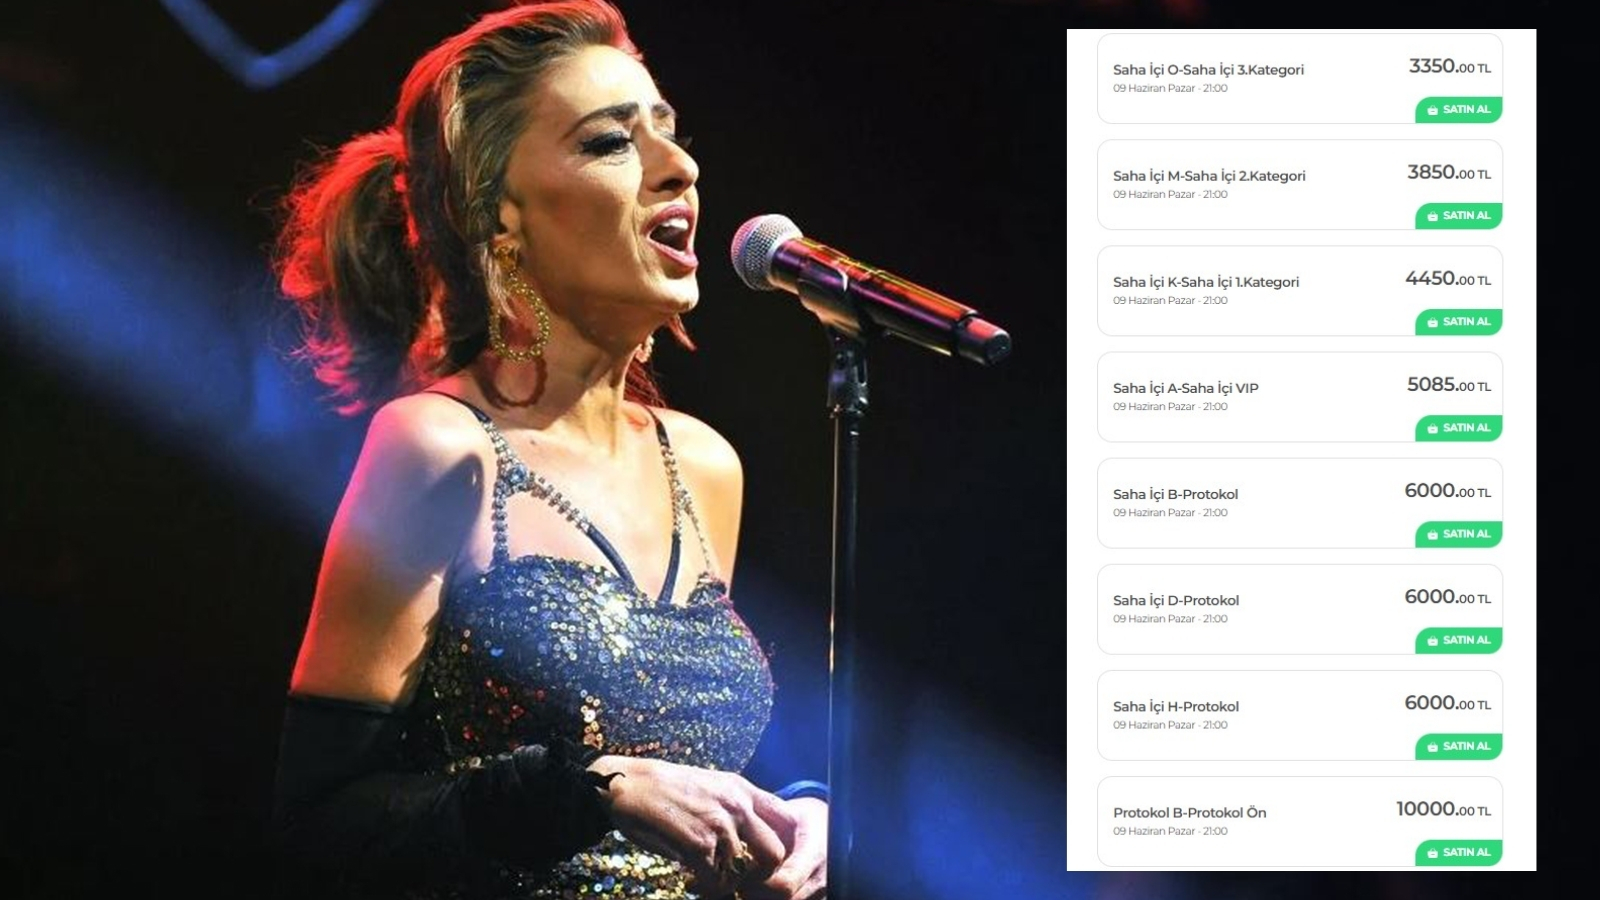 Yıldız Tilbe'nin Konser Fiyatları Cepleri Yakıyor